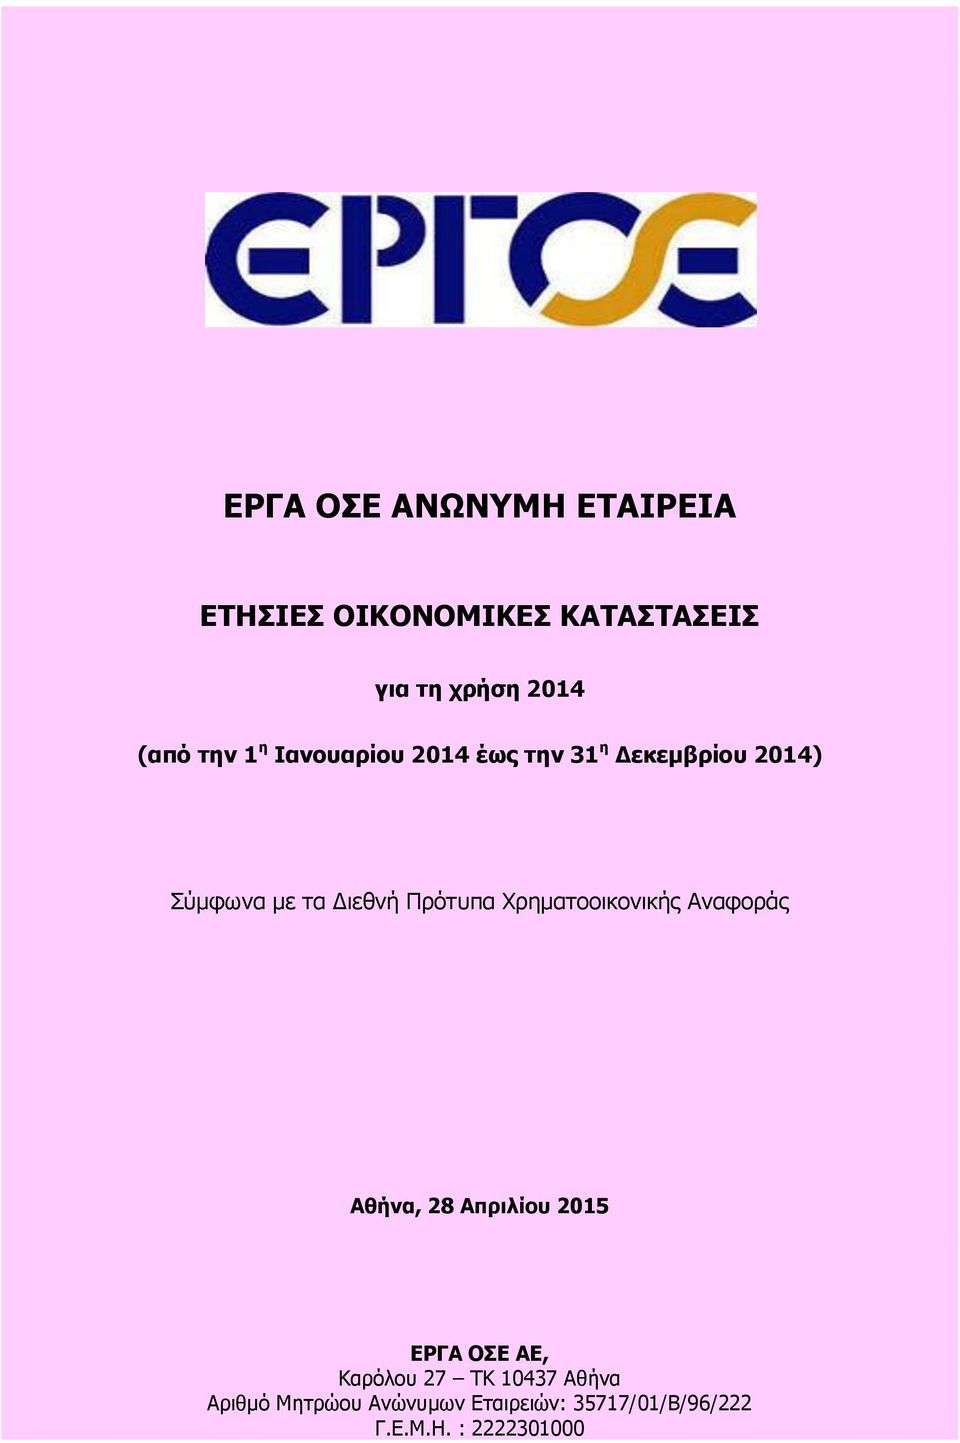 Πρότυπα Χρηματοοικονικής Αναφοράς Αθήνα, 28 Απριλίου 2015 ΕΡΓΑ ΟΣΕ ΑΕ, Καρόλου 27